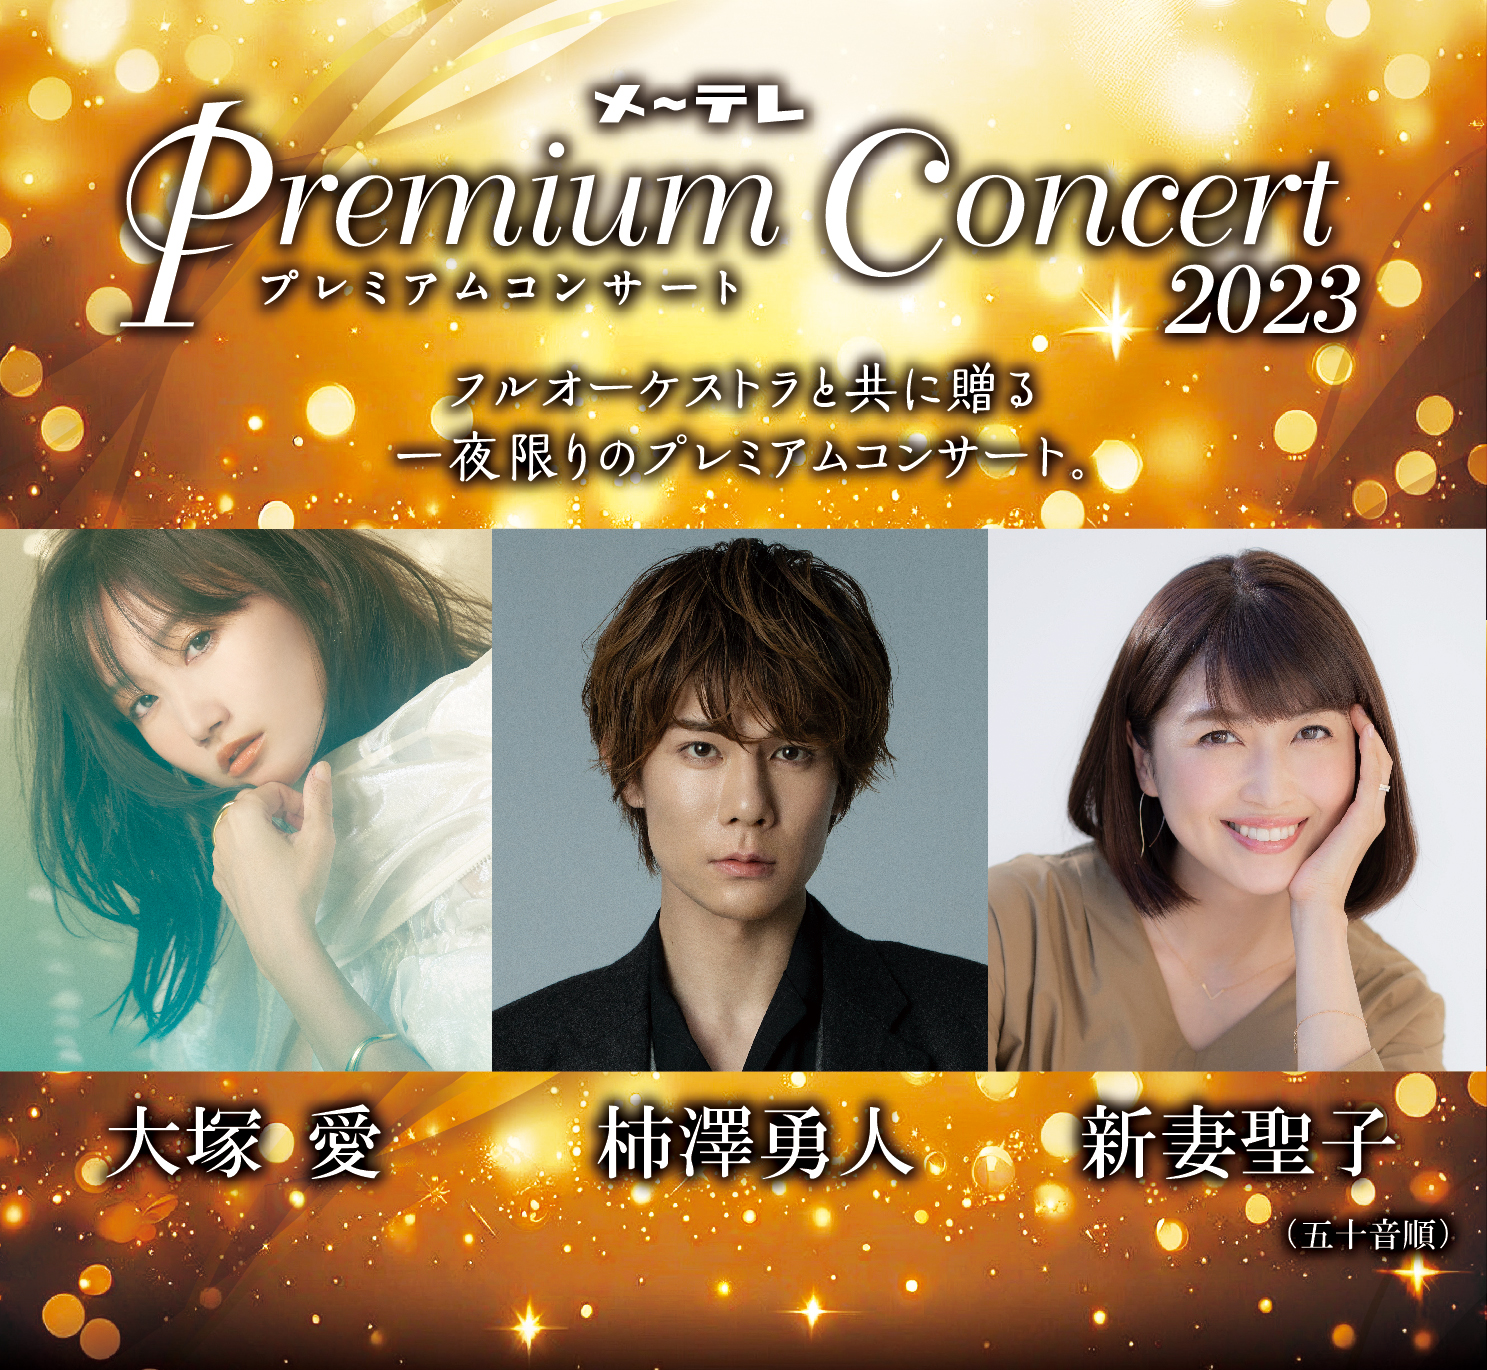 メ～テレ Premium Concert 2023 フルオーケストラと共に贈る一夜限りのプレミアムコンサート